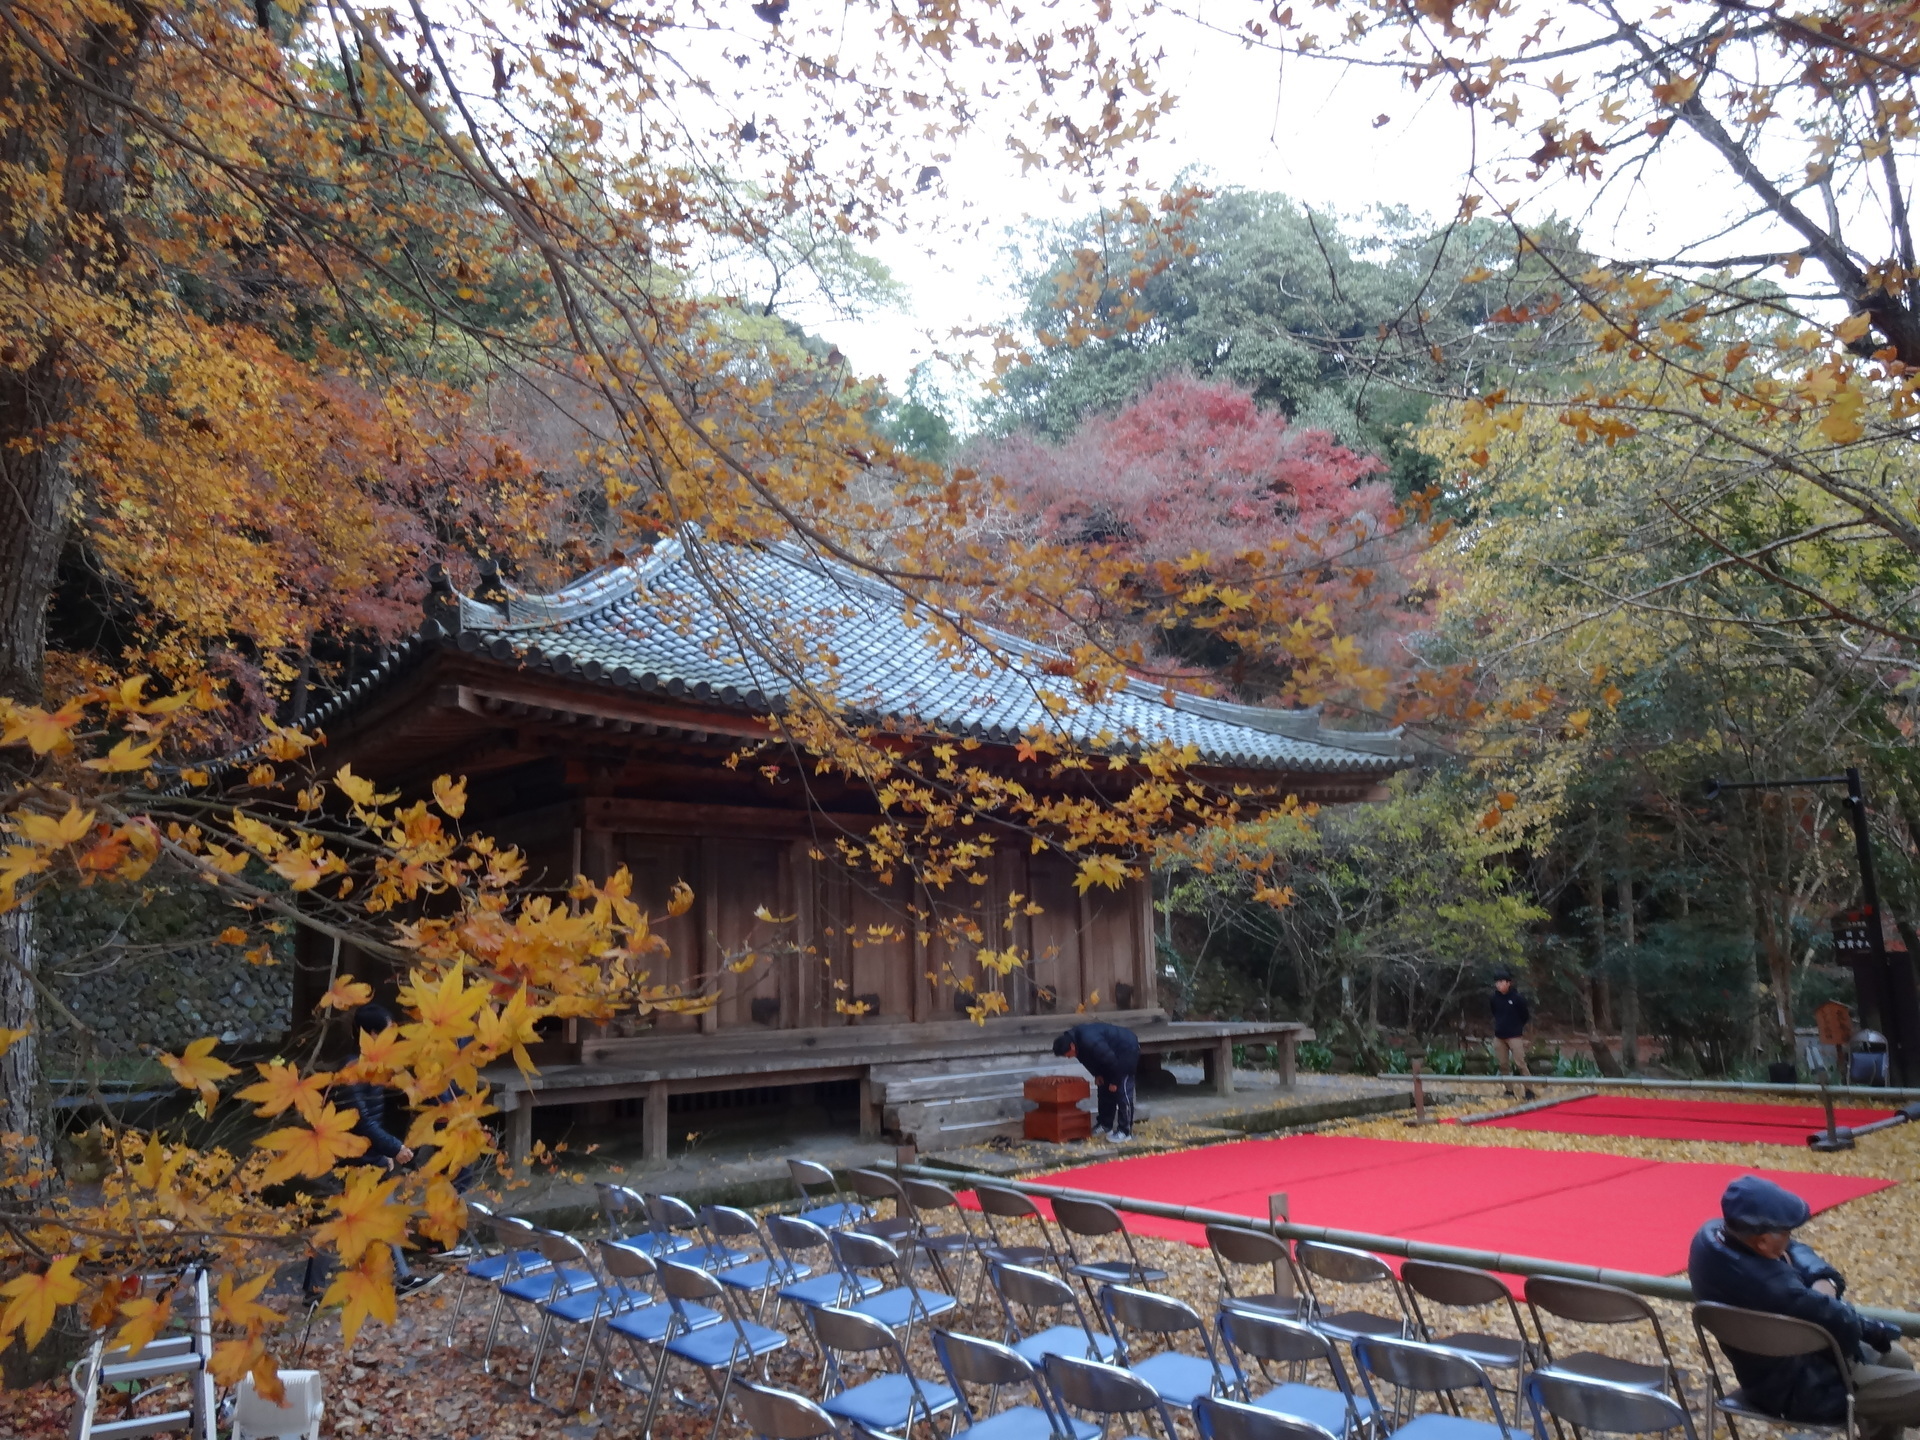 荘厳なたたずまいの 富貴寺 は 紅葉もいよいよ終盤だ わくわく移住生活 豊後高田で田舎ぐらし